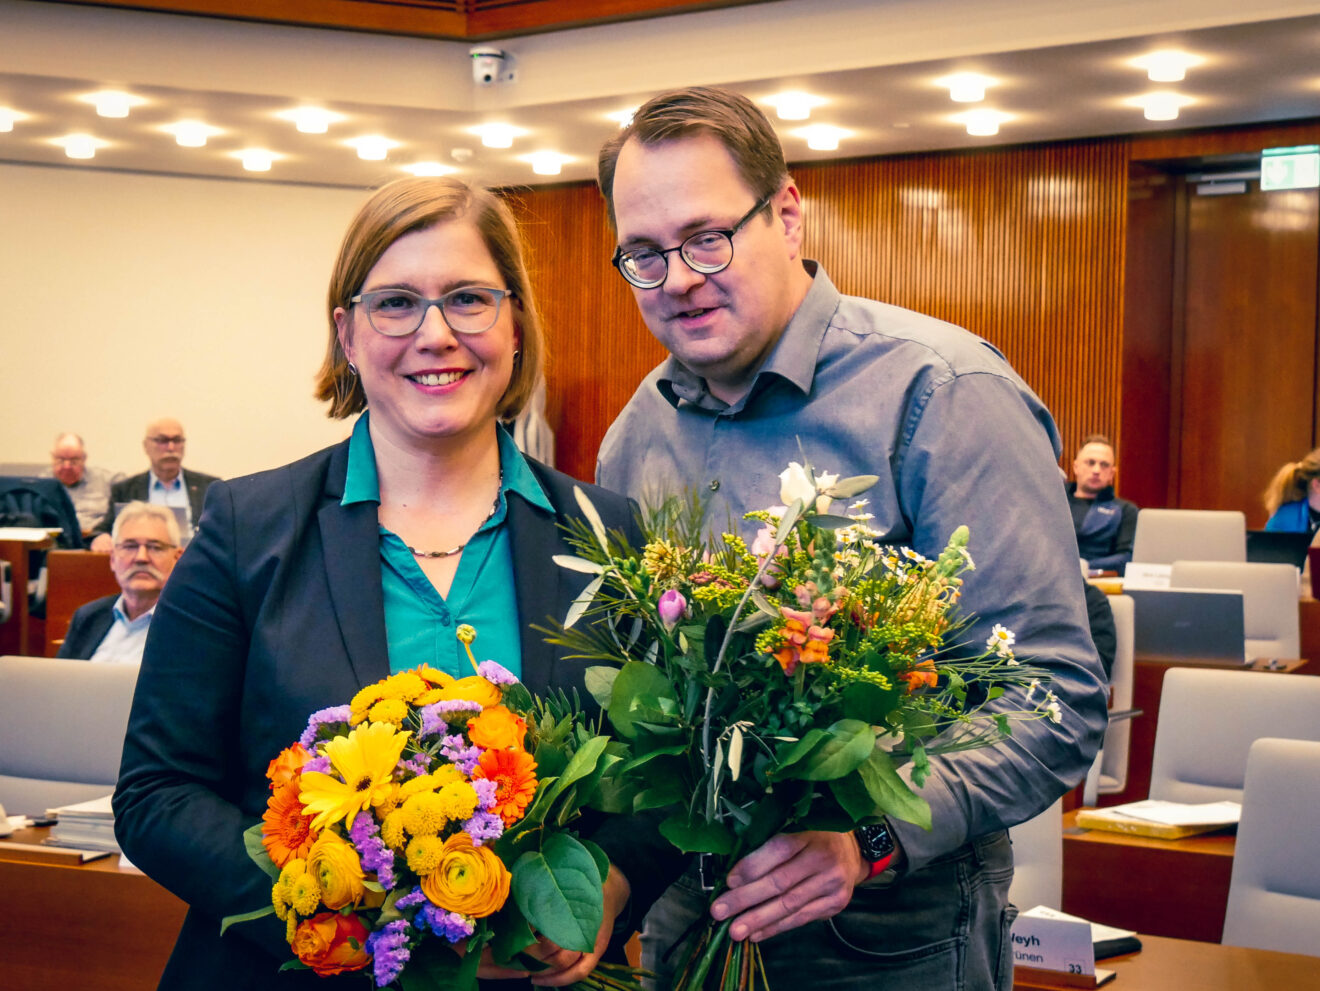 Skadi Jennicke mit Blumenstrauß, daneben Sören Pellmann.